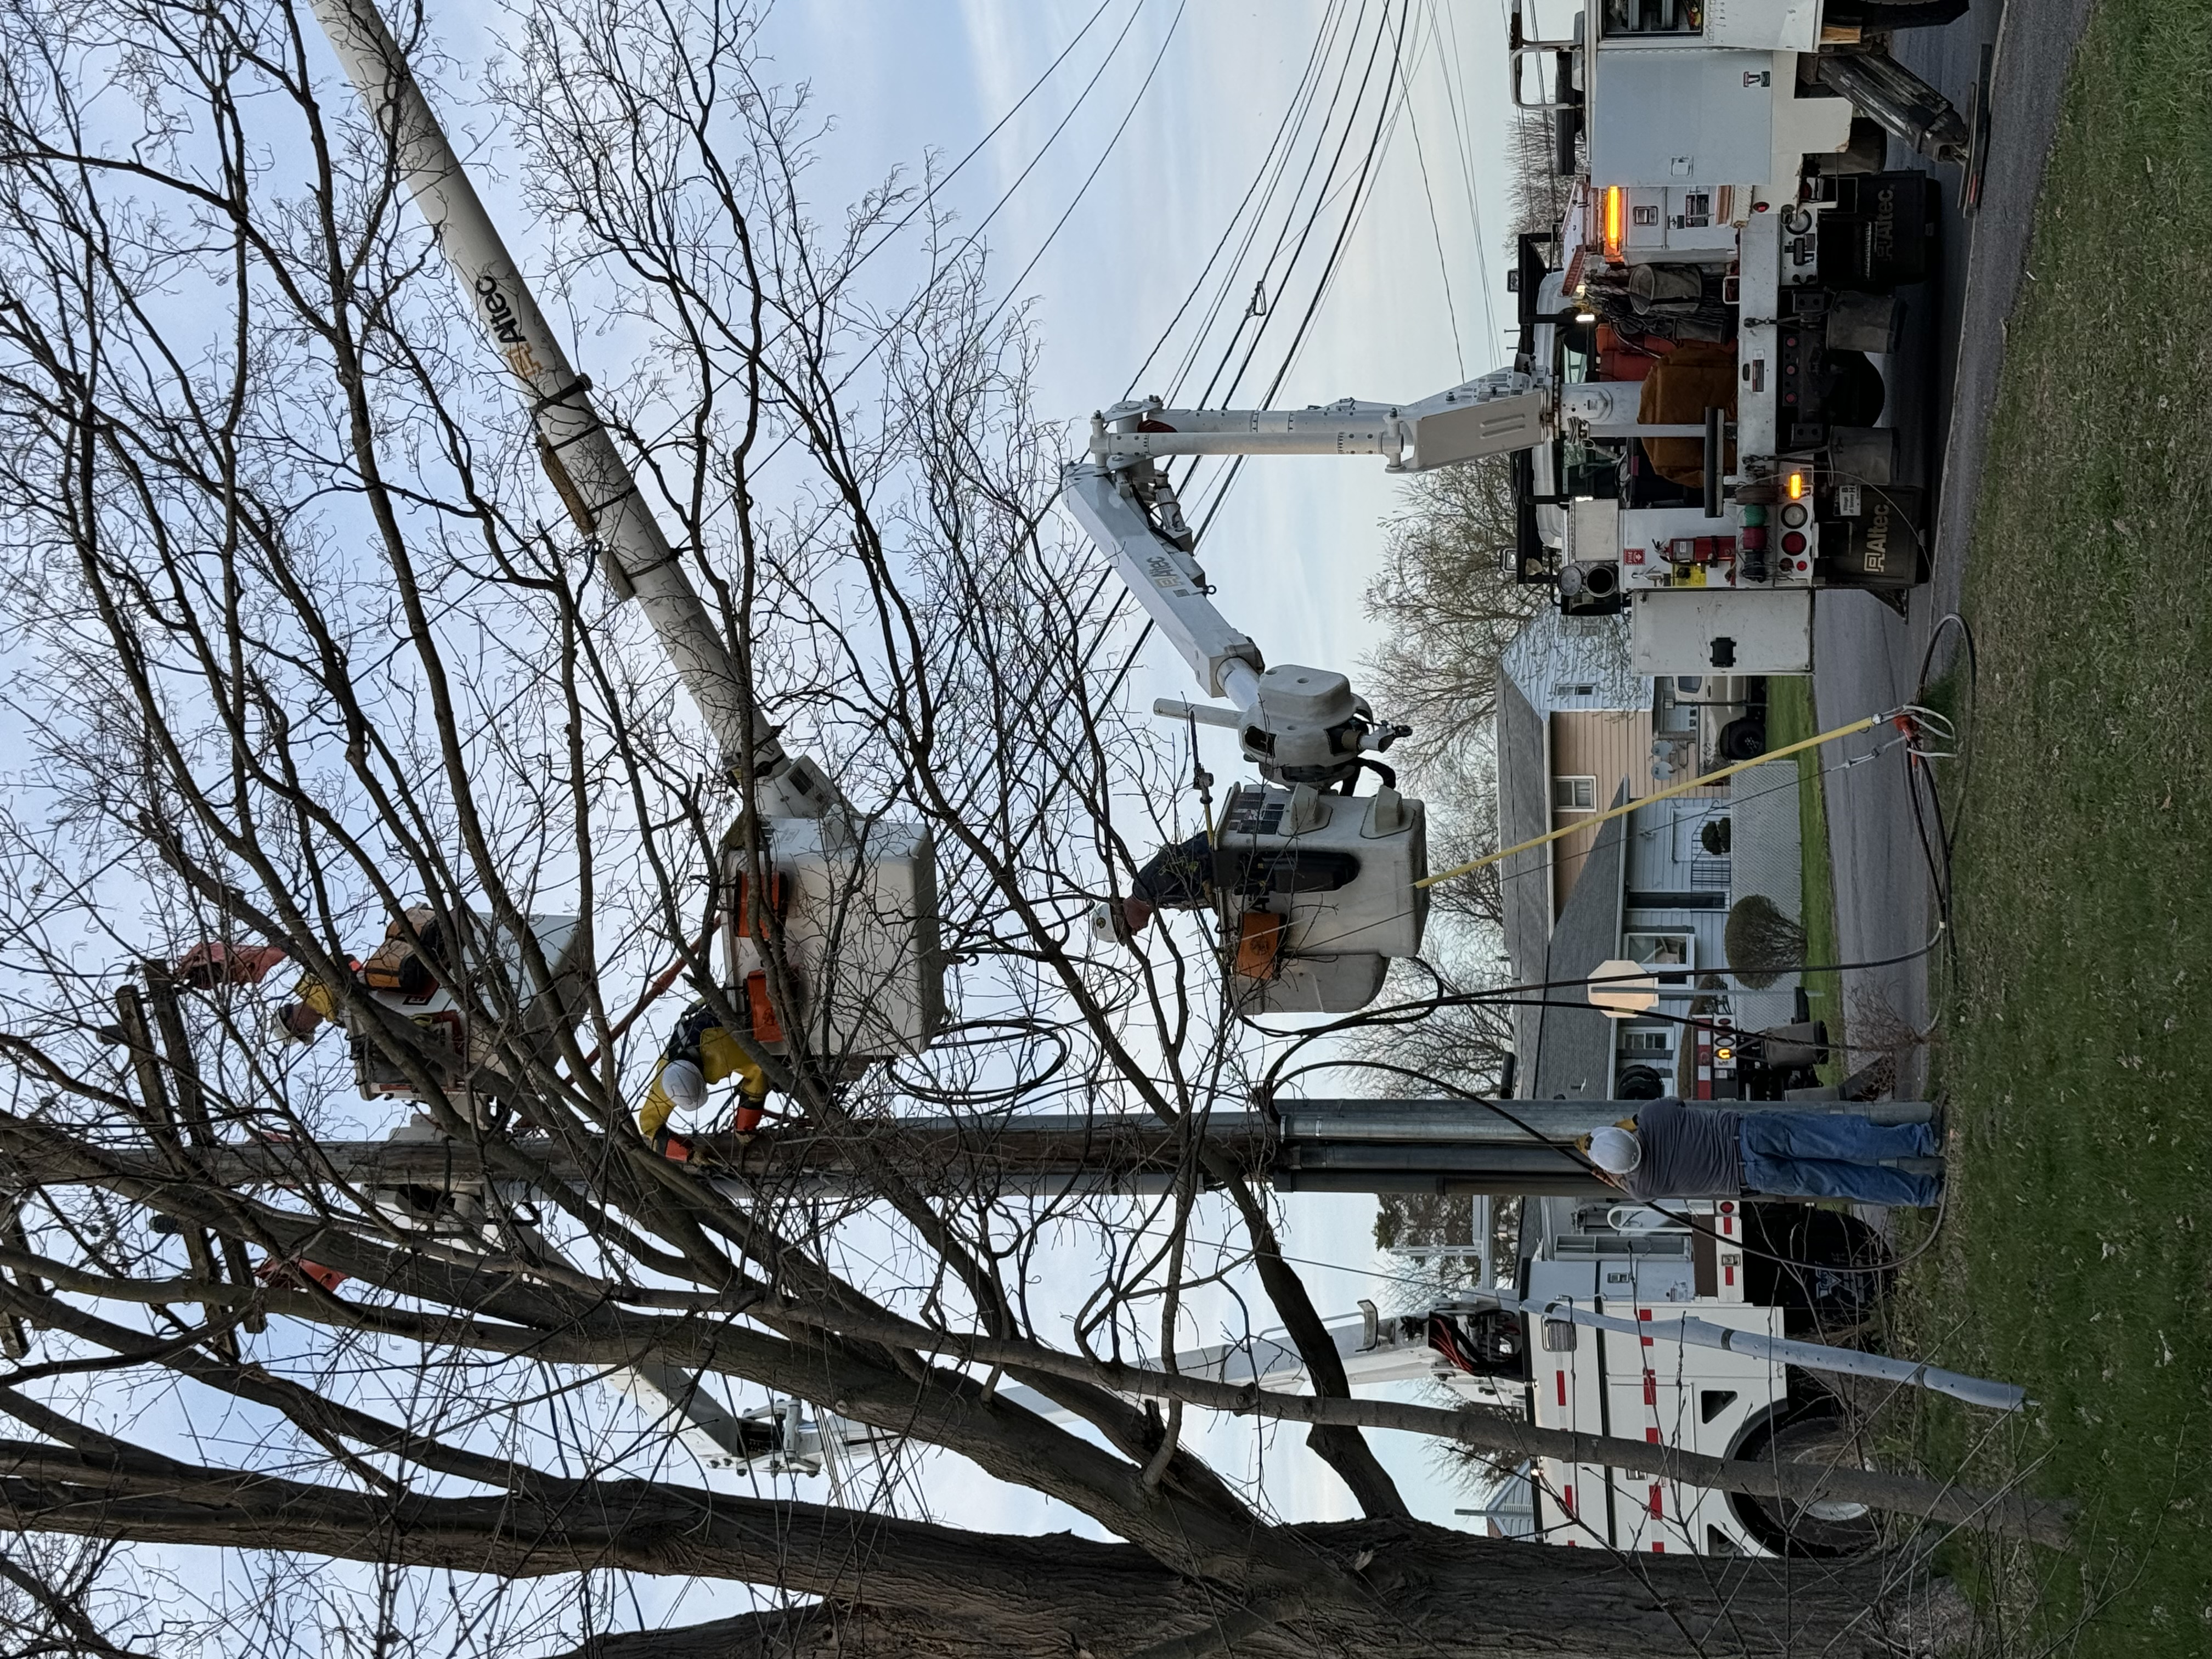 crews work to restore power